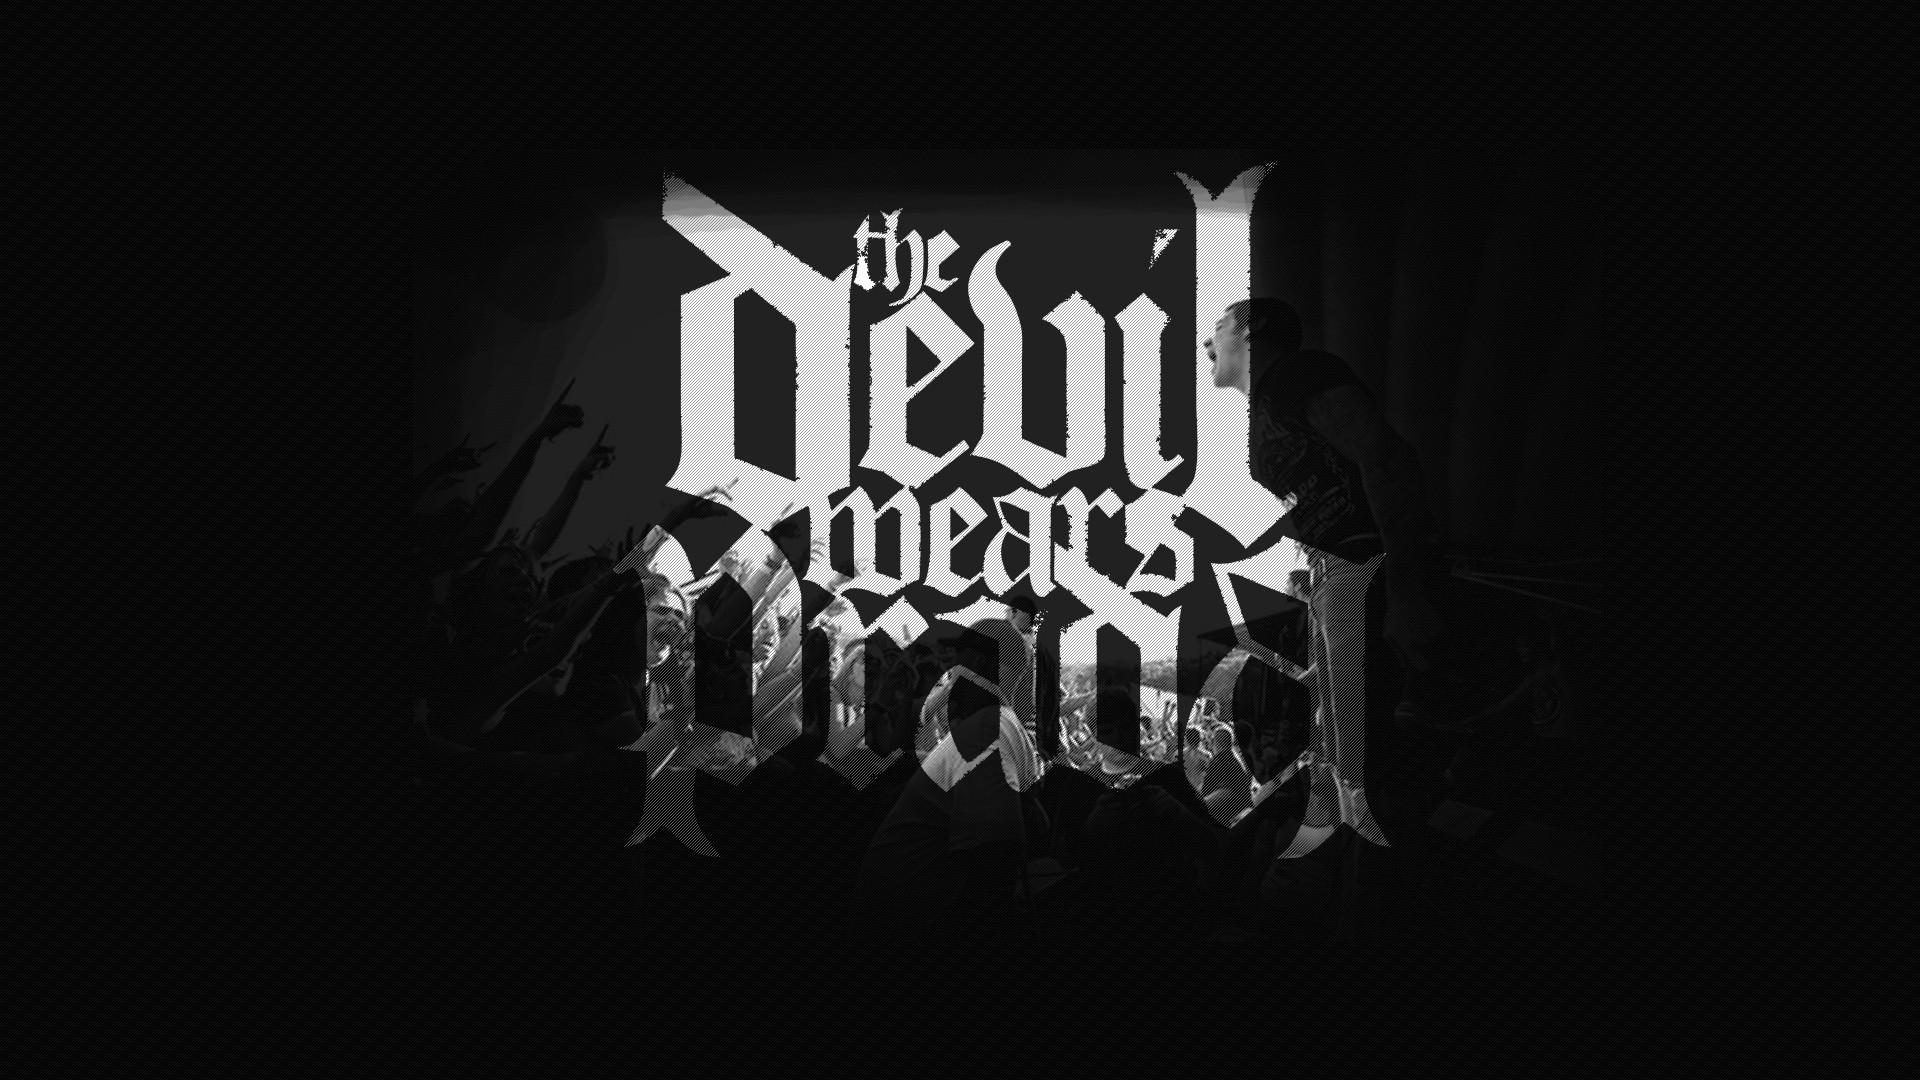 Devil wears prada band logos logo tdwp wallpaper  101396